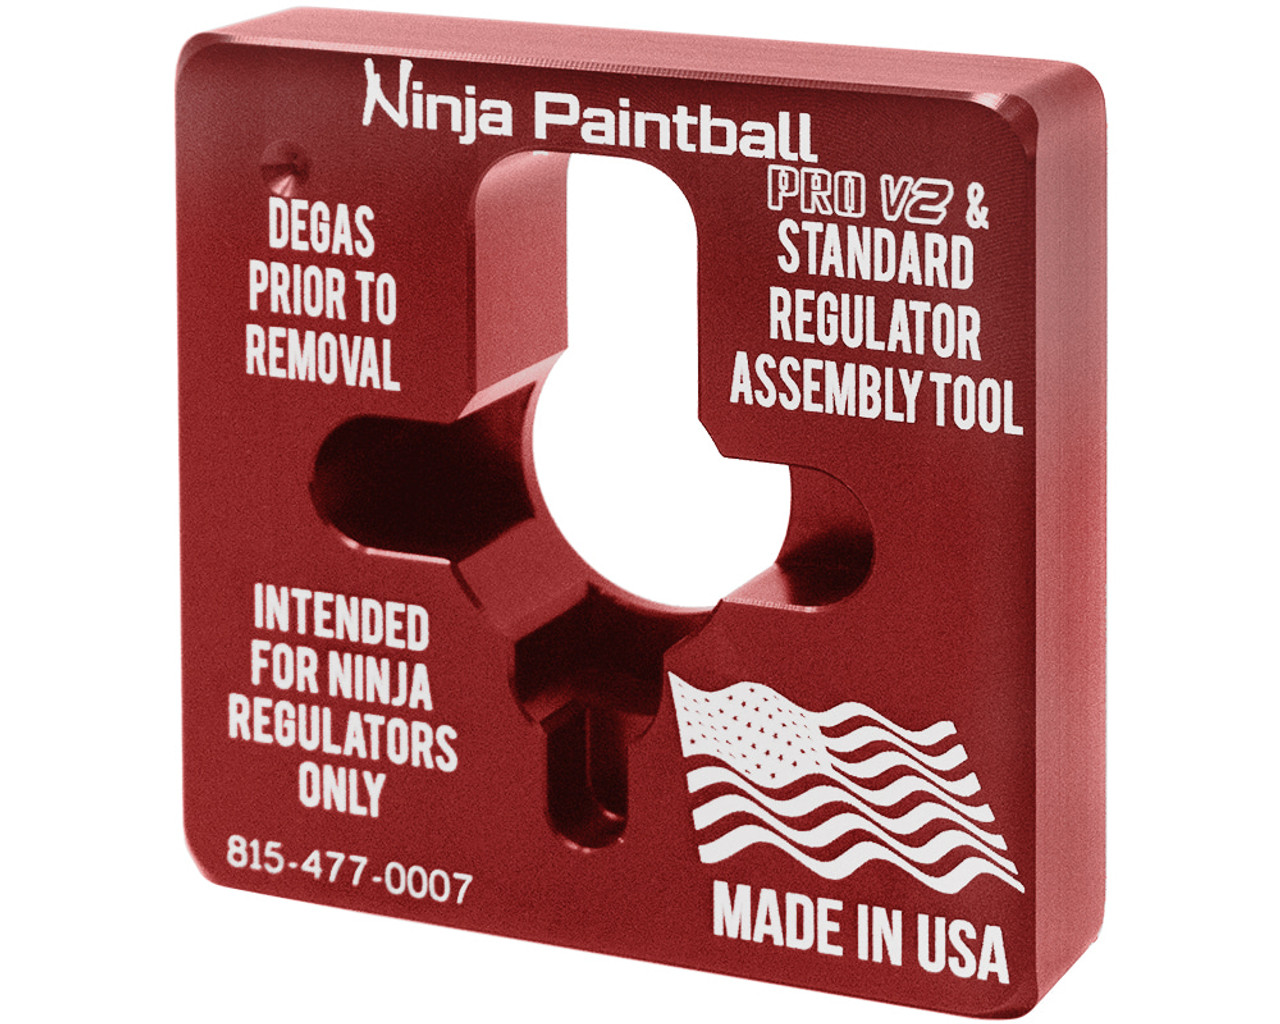 Ninja Tank Regulator Assembly Tool - Standard & Pro V2